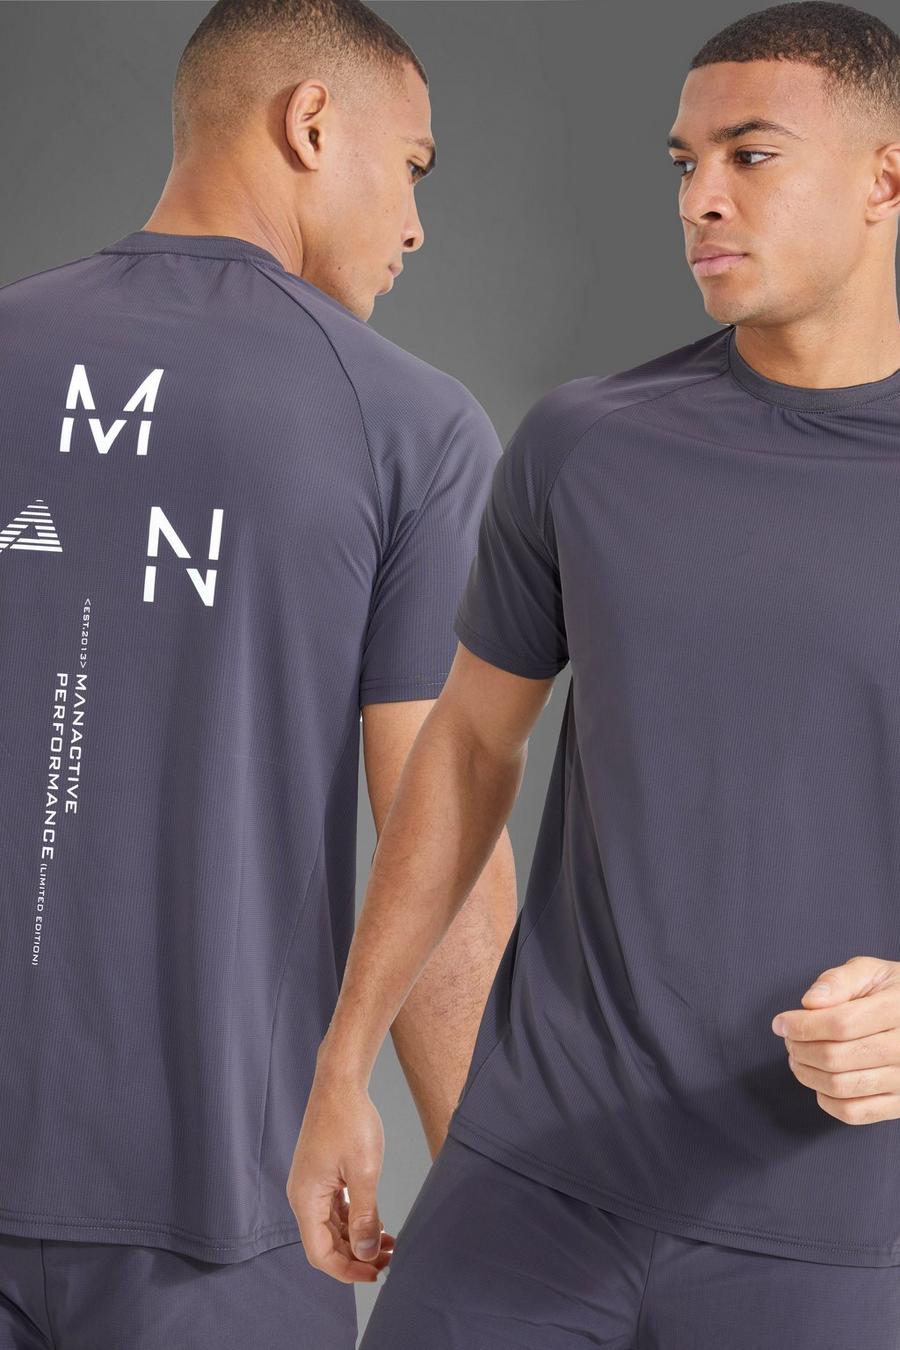 Camiseta MAN Active deportiva con estampado reflectante en la espalda, Charcoal gris